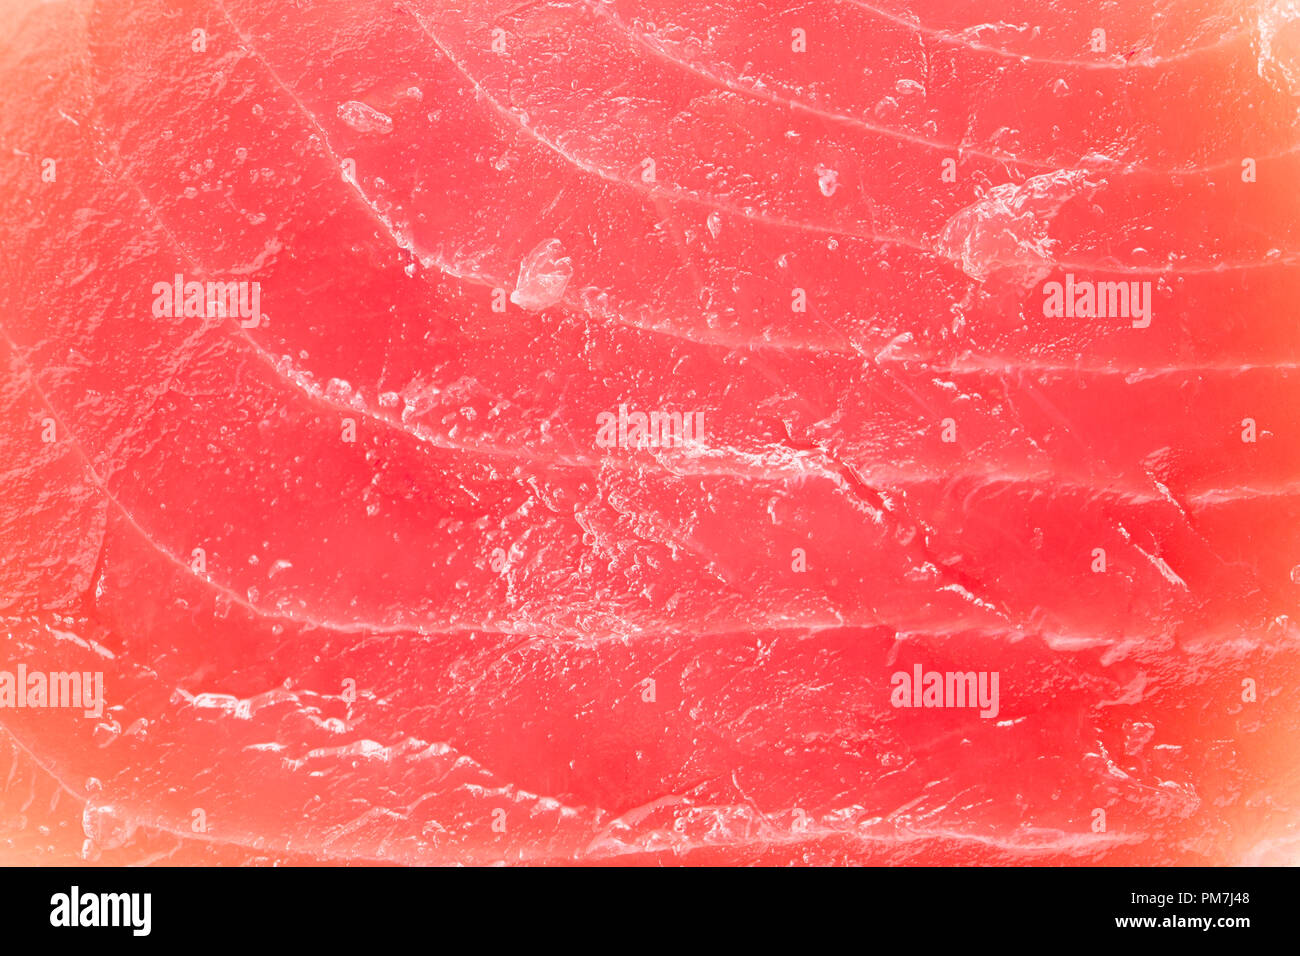 Un gros plan d'une ligne de matières premières importées, le thon albacore pêché, Thunnus albacares, steak acheté dans un supermarché au Royaume-Uni. Dorset England UK GO Banque D'Images